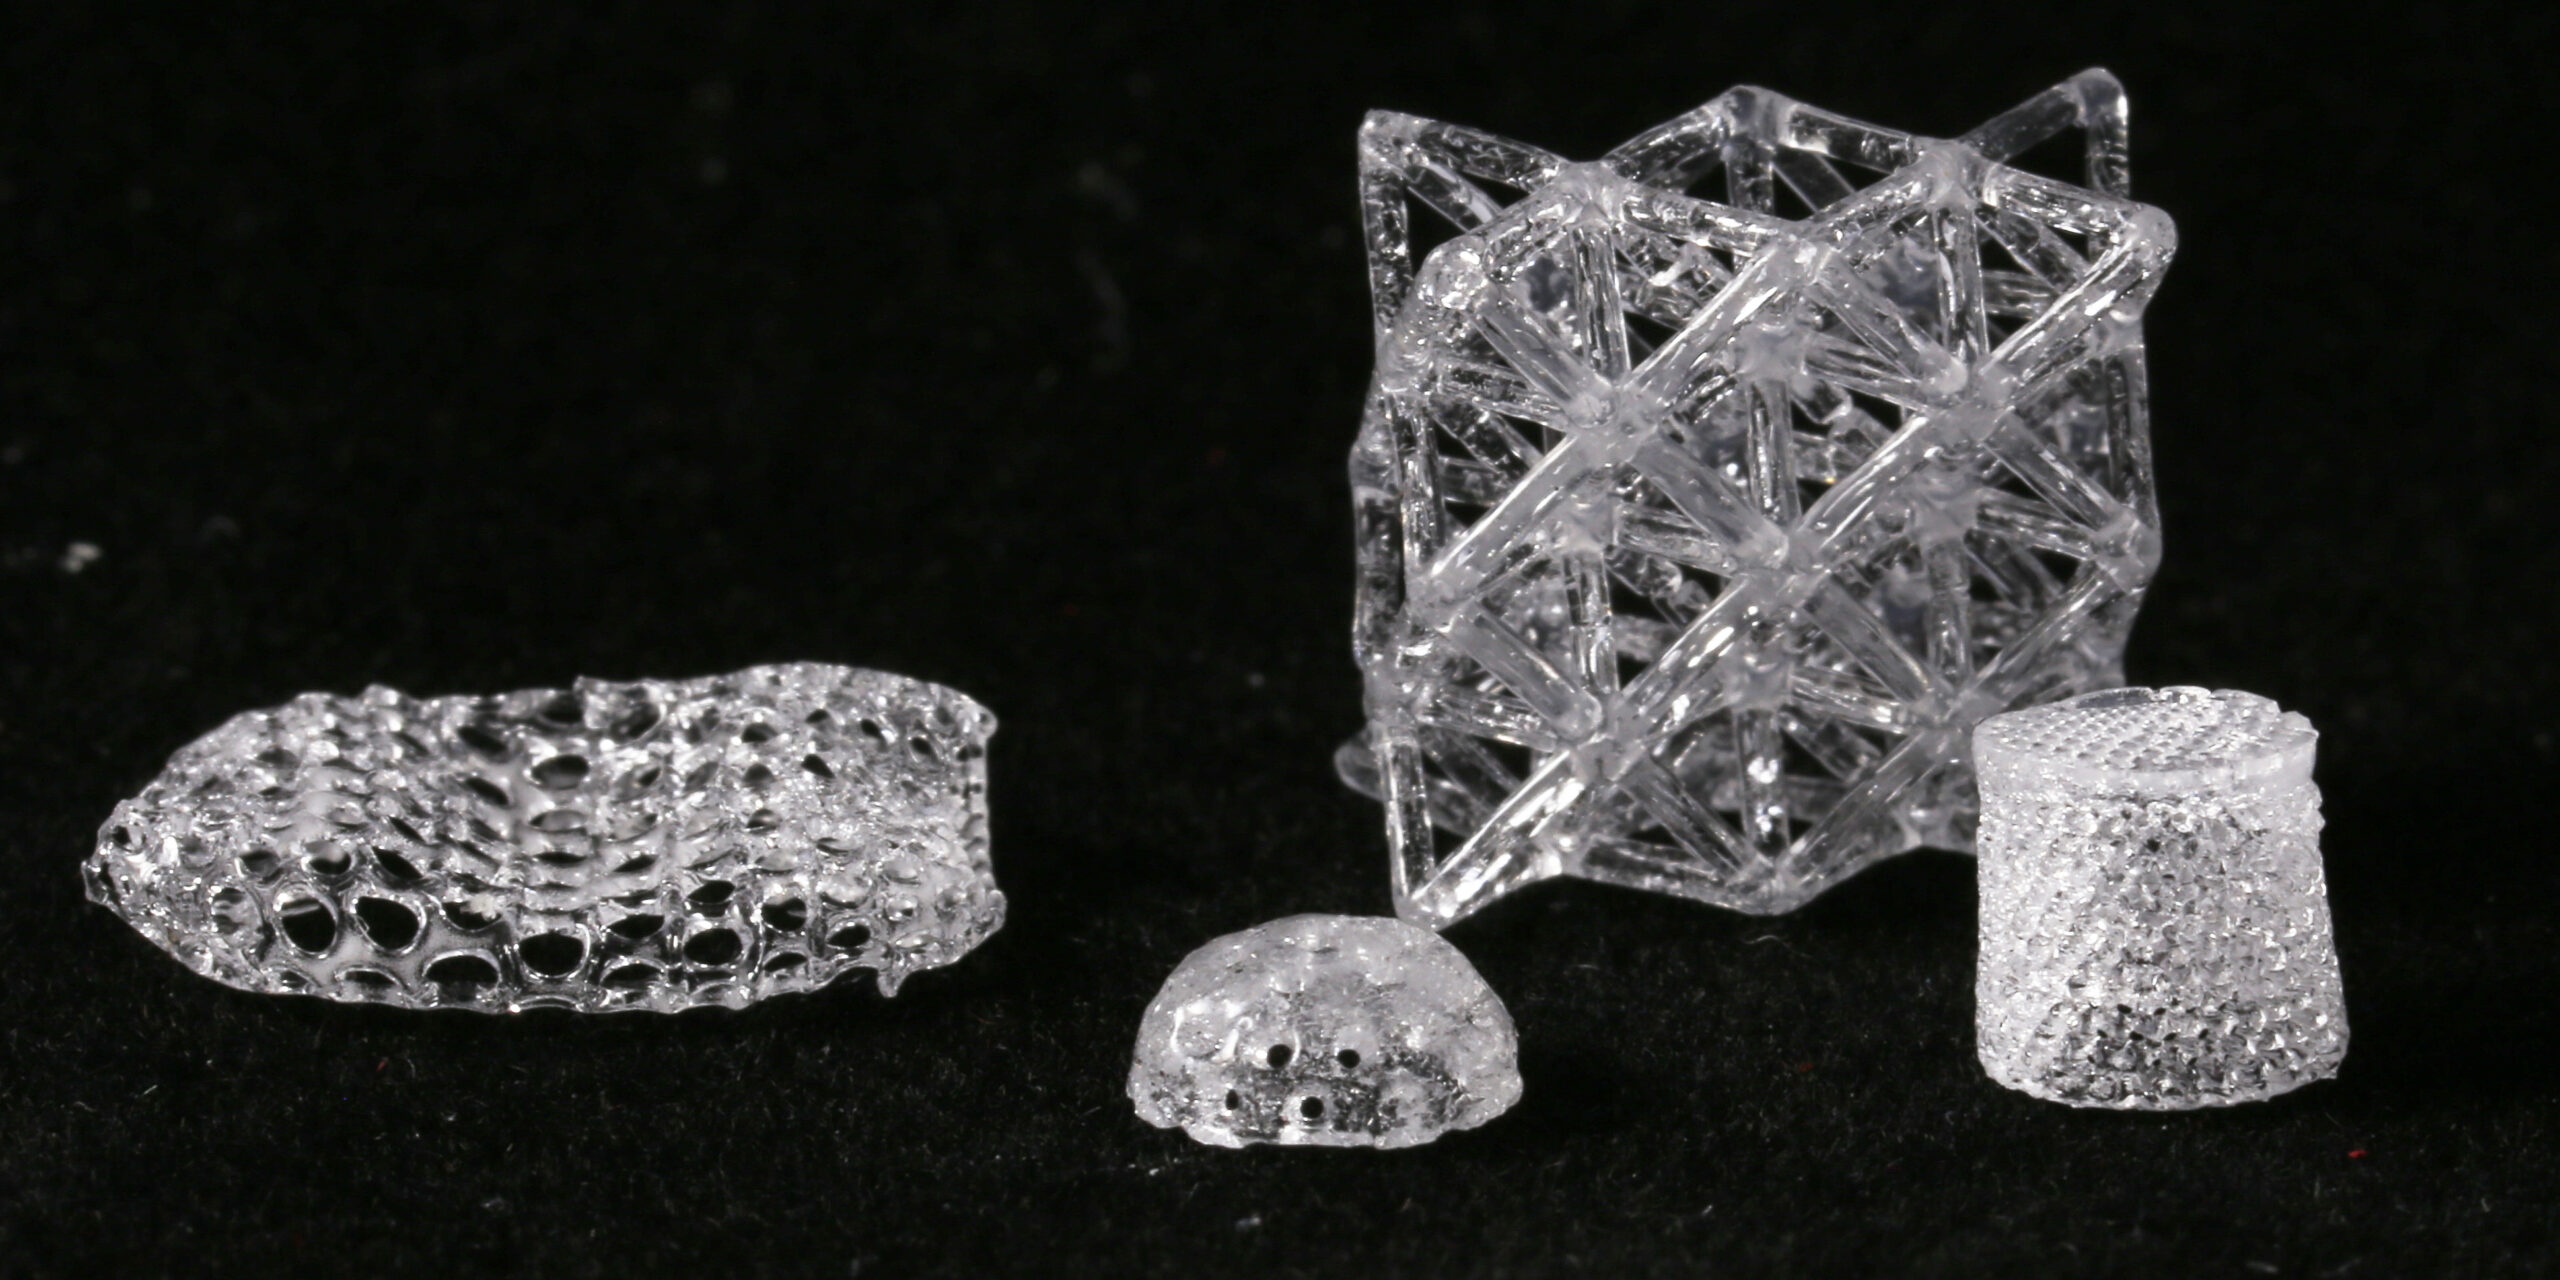 Glas från 3D-printer